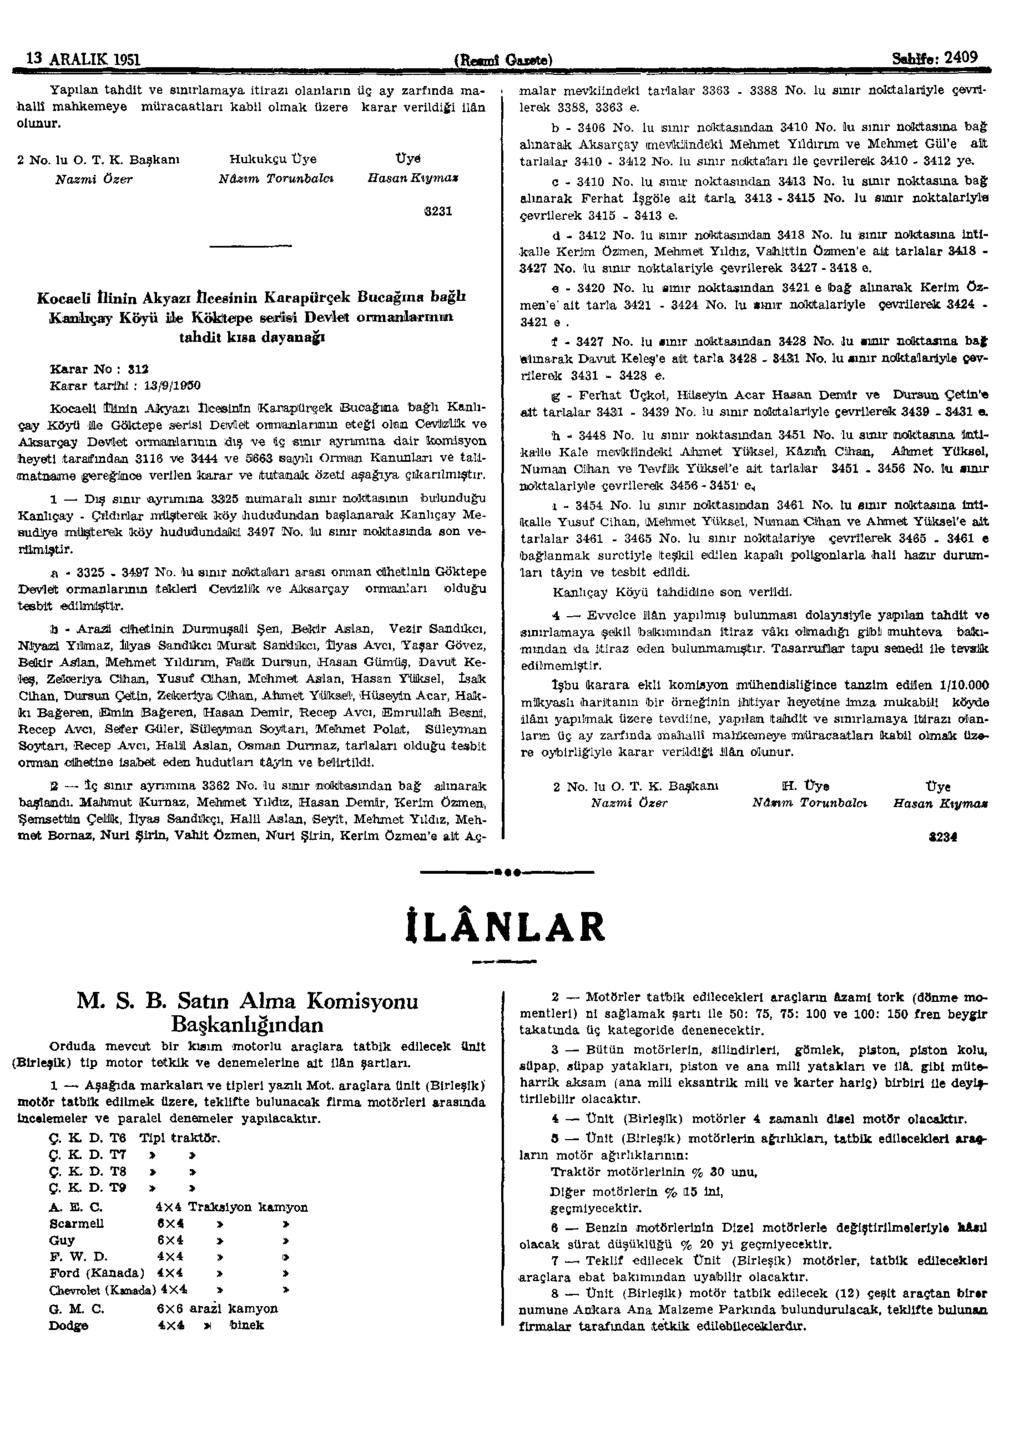 13 ARALIK 1951 (Resmî Gazete) Sahife: 2409 Yapılan tahdit ve sınırlamaya itirazı olanların üç ay zarfında mahallî mahkemeye müracaatları kabil olmak üzere karar verildiği ilân olunur. 2 No. lu O. T.